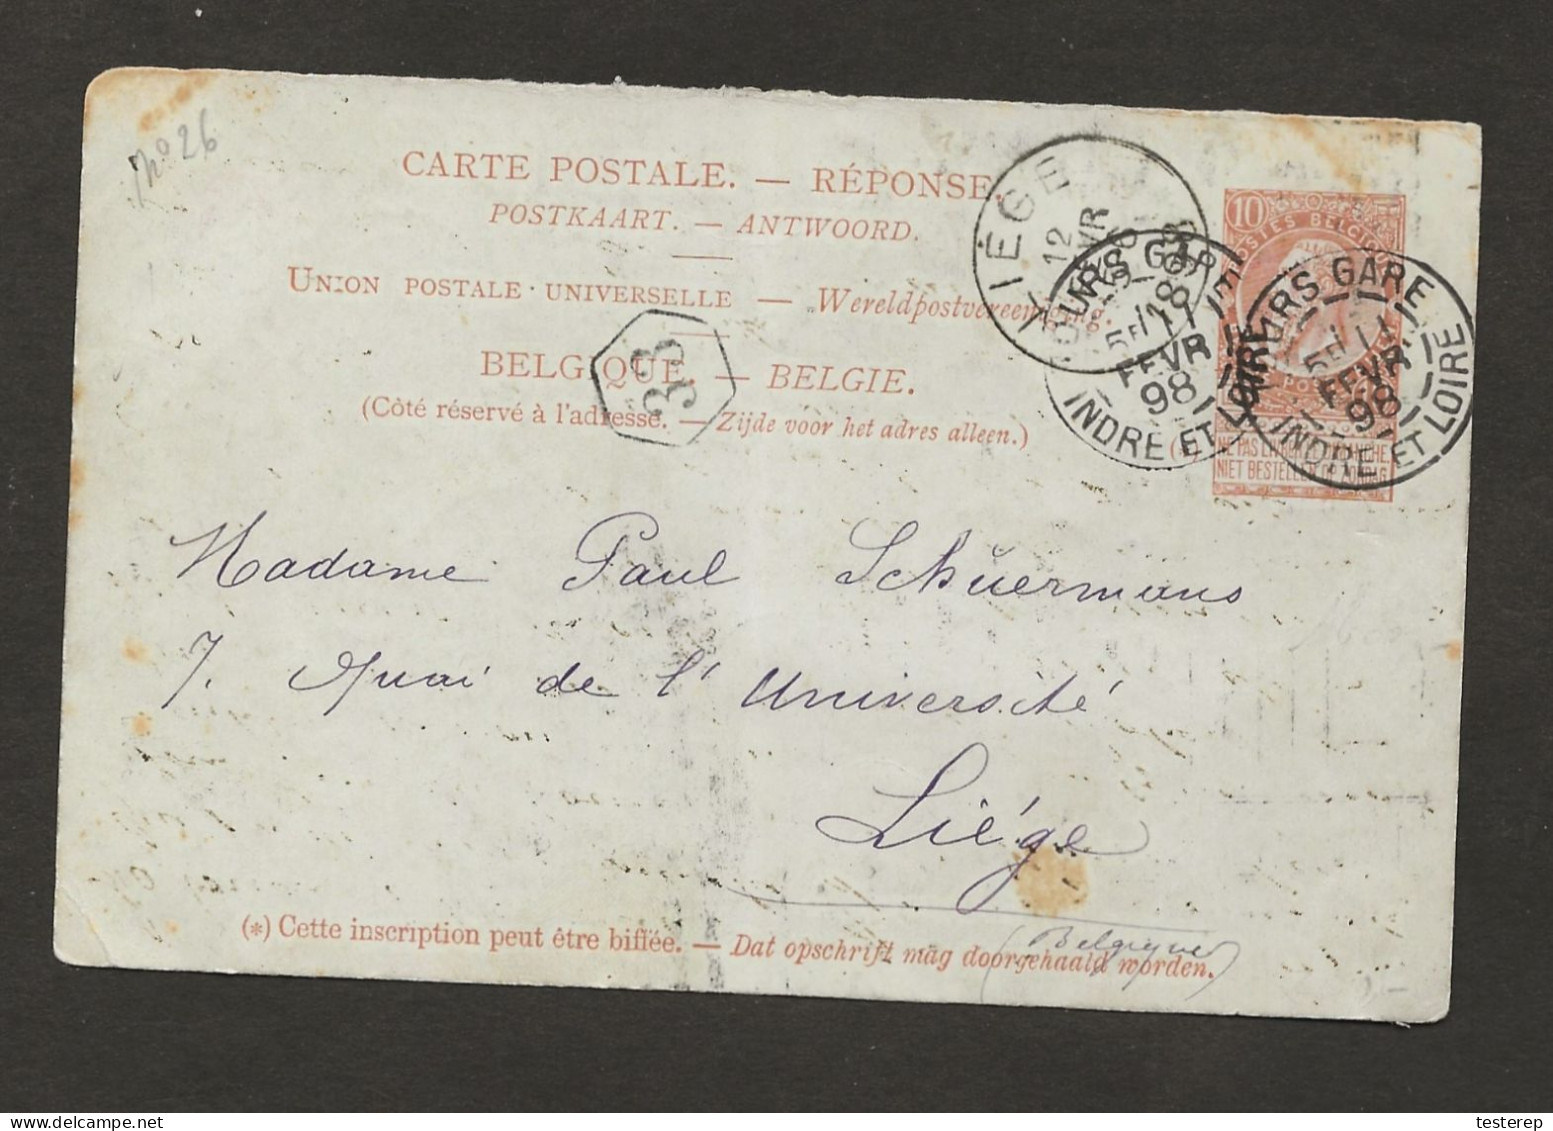 CARTE POSTALE 10 Ct Brun Réponse De France 1898 Vers Liège - Cartes Avec Réponse Payée